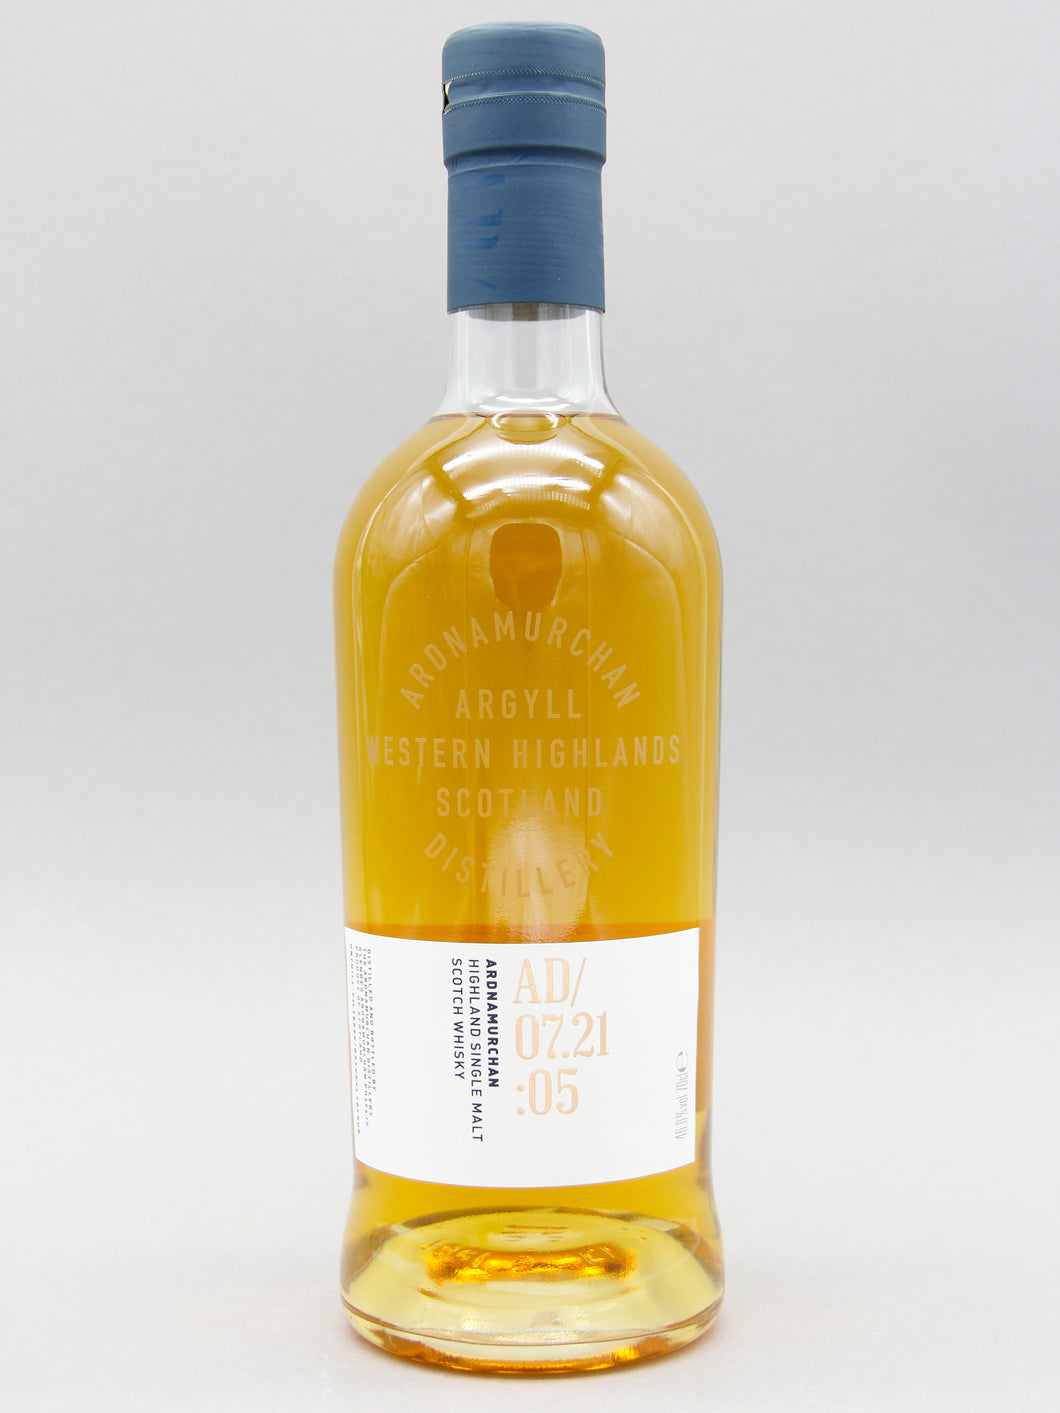 Ardnamurchan 07.21:05, Highland Single Malt Scotch Whisky (46.8%, 70cl)